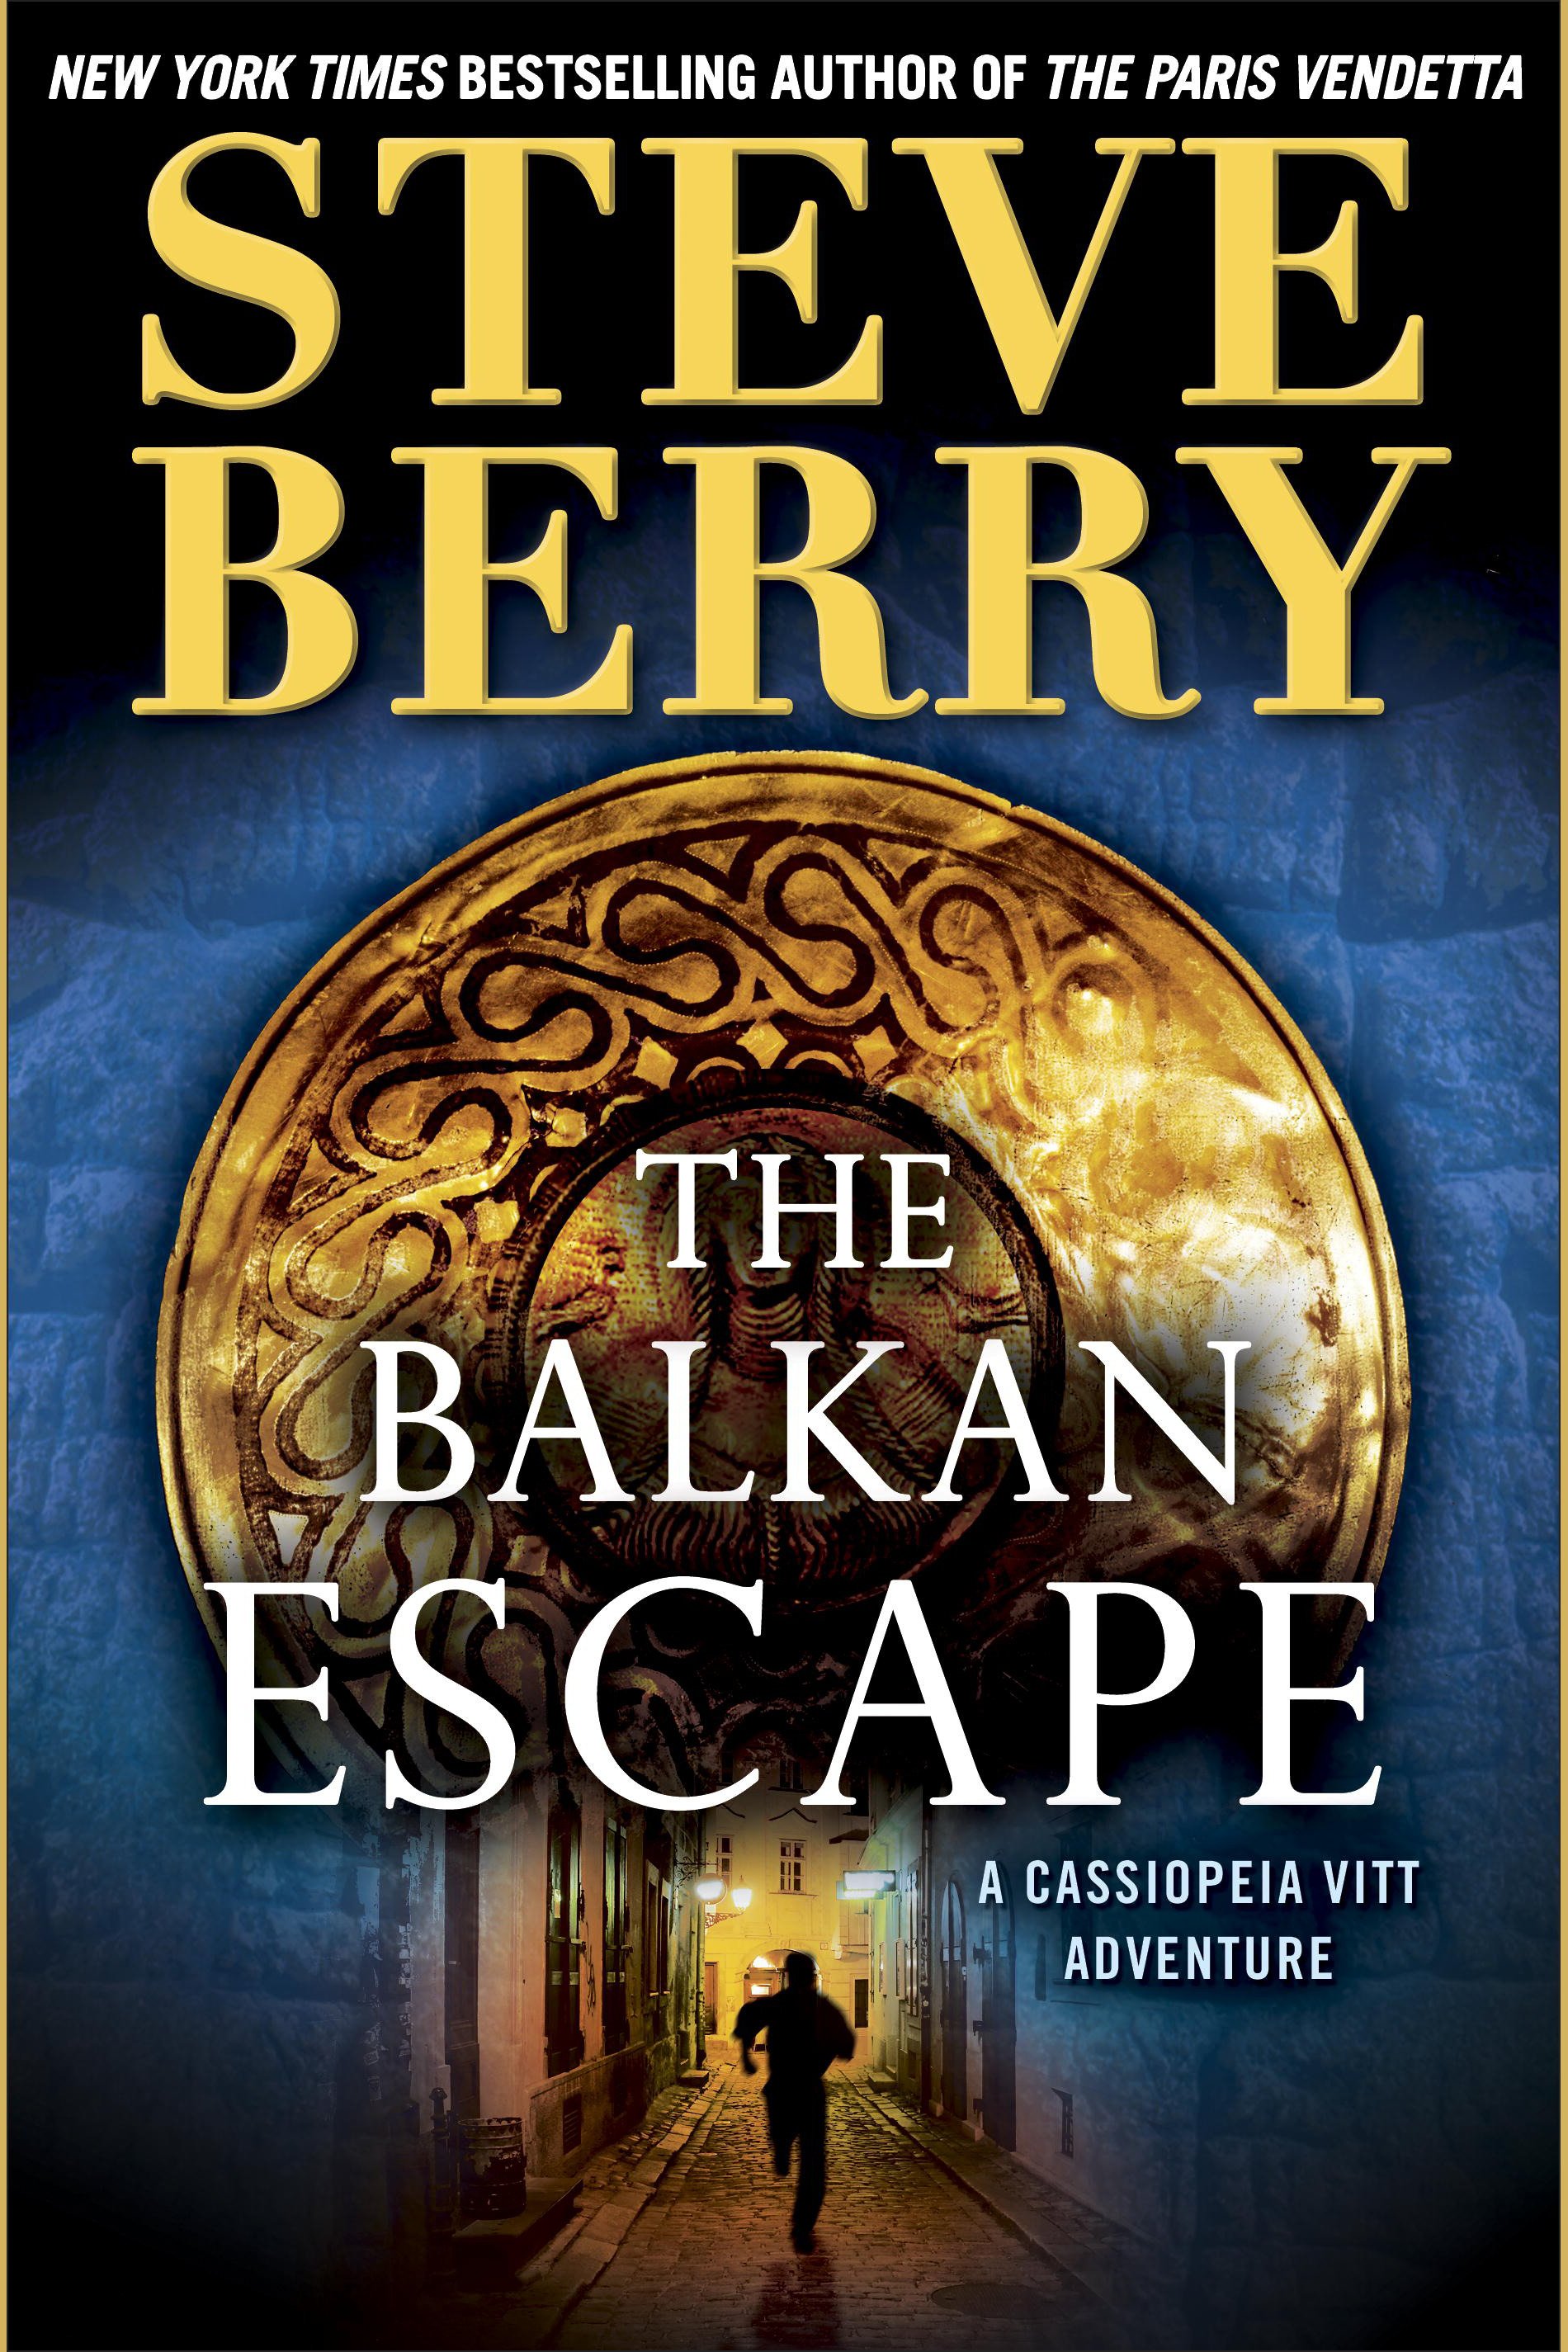 The Balkan escape cover image